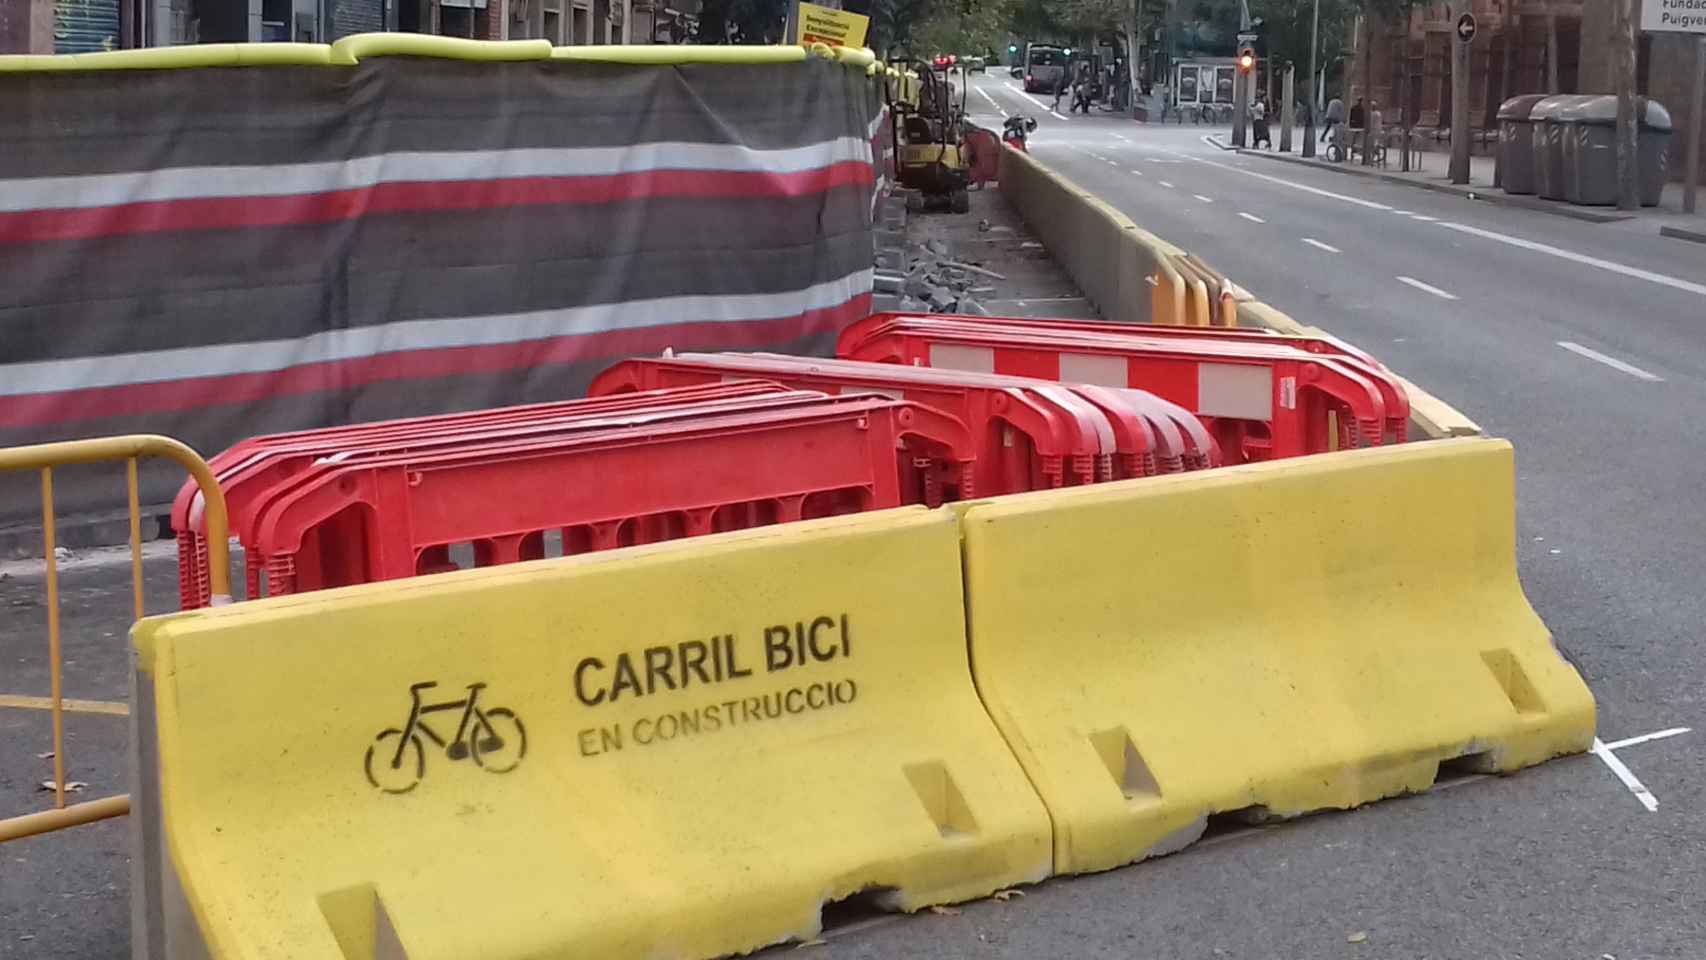 Carril bici en construcción / JORDI SUBIRANA